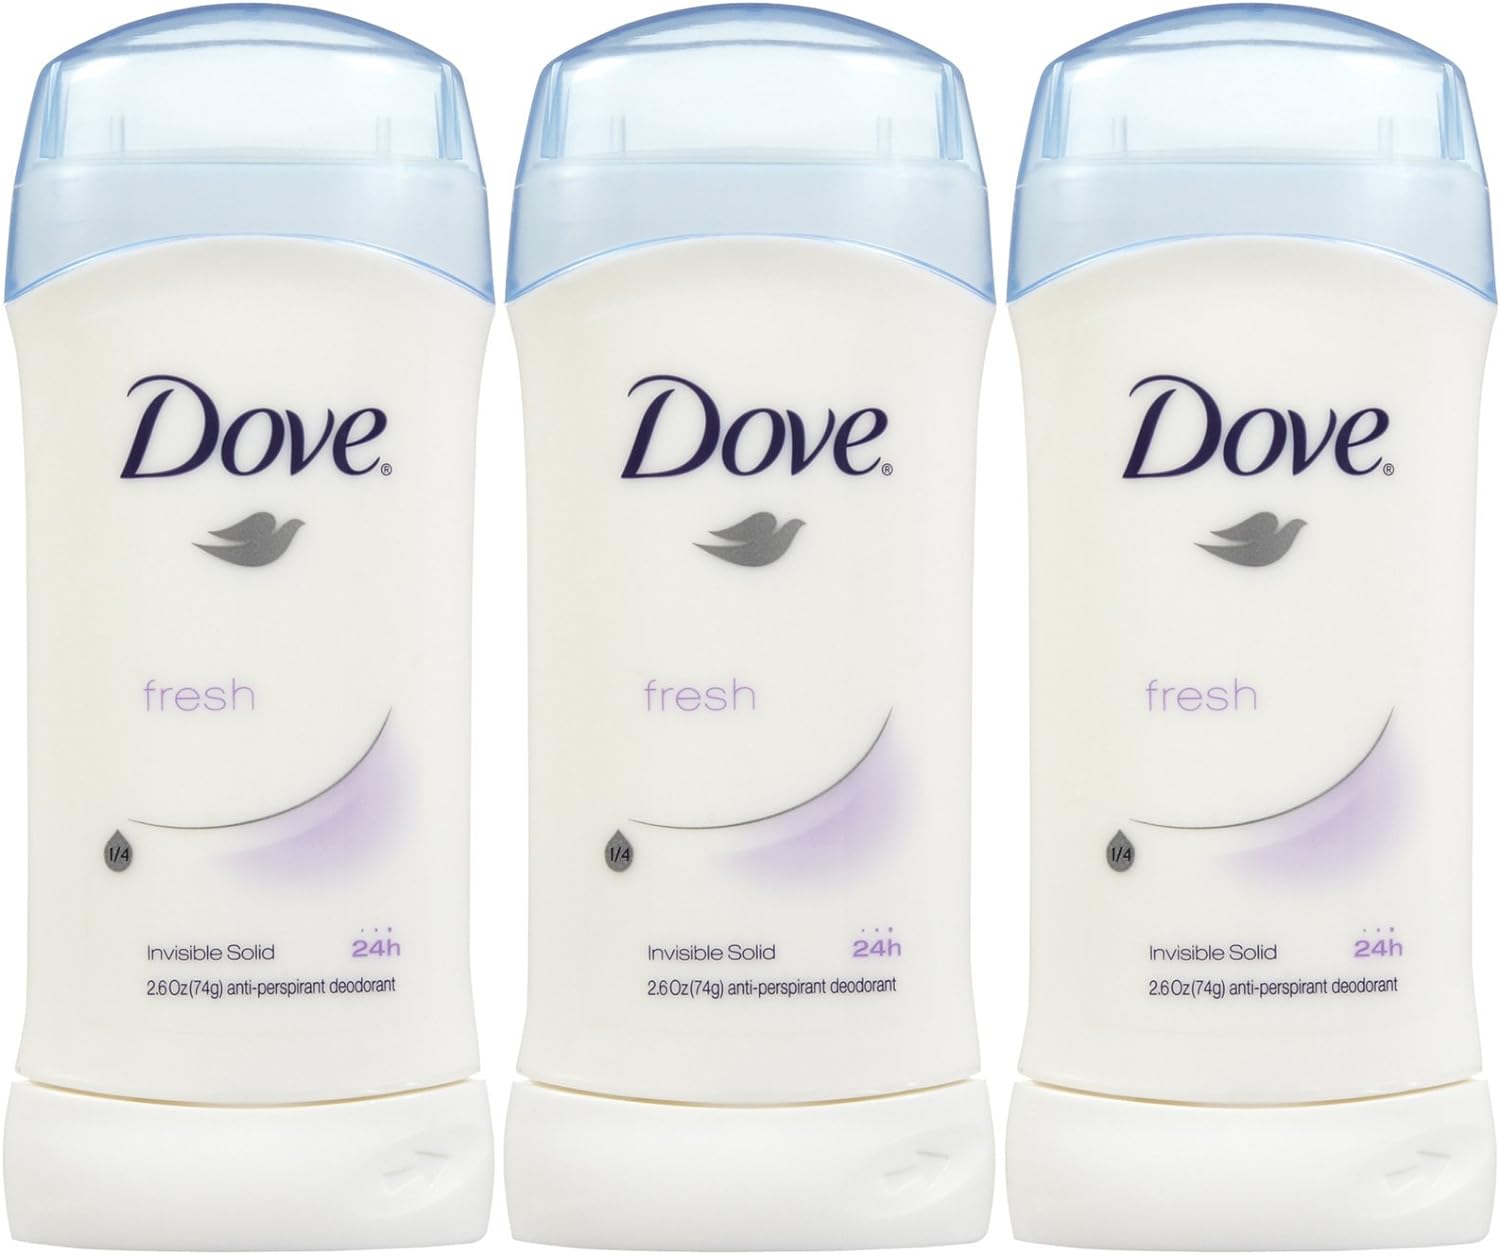  Dove Invisible Solid Deodorant, Fresh - 2.6 oz - 3 pk